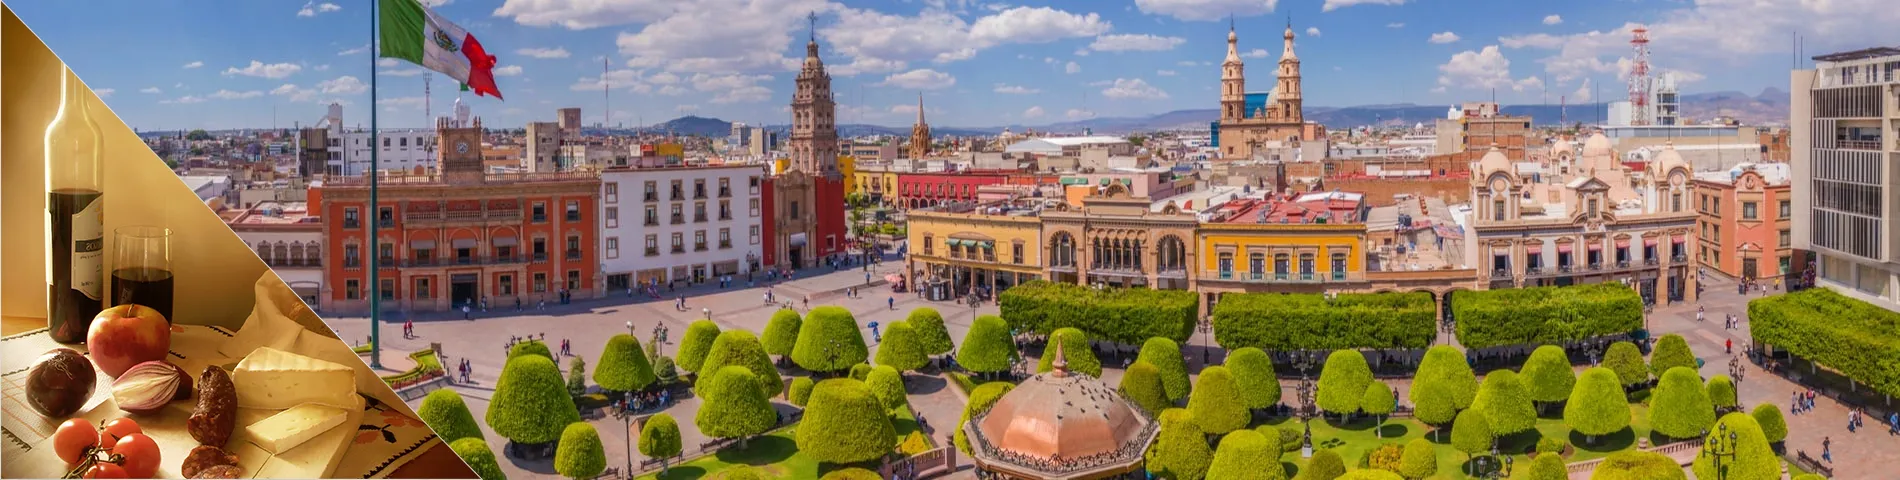 Guanajuato - Spanish & Culture